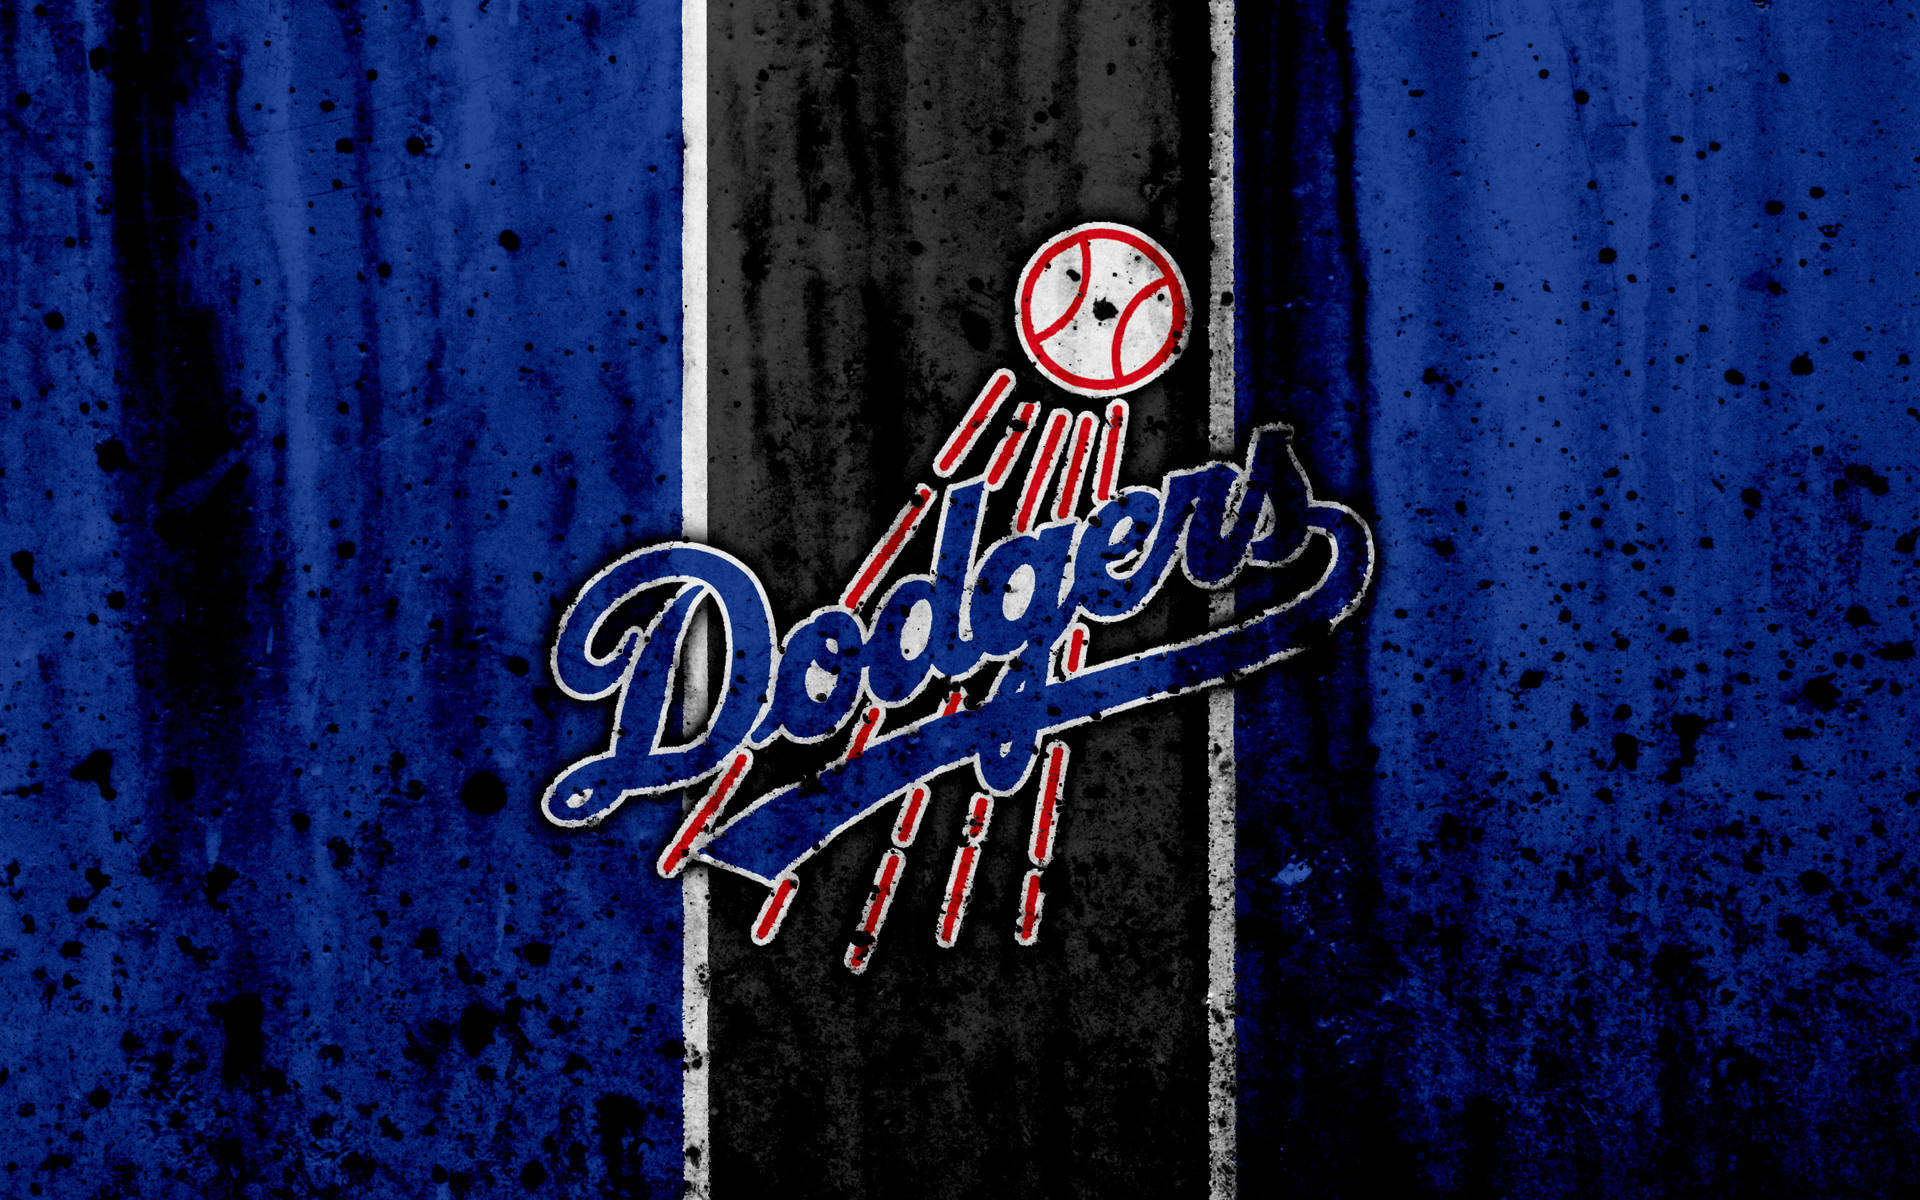 Dodgerslogo Mit Farbspritzern Wallpaper